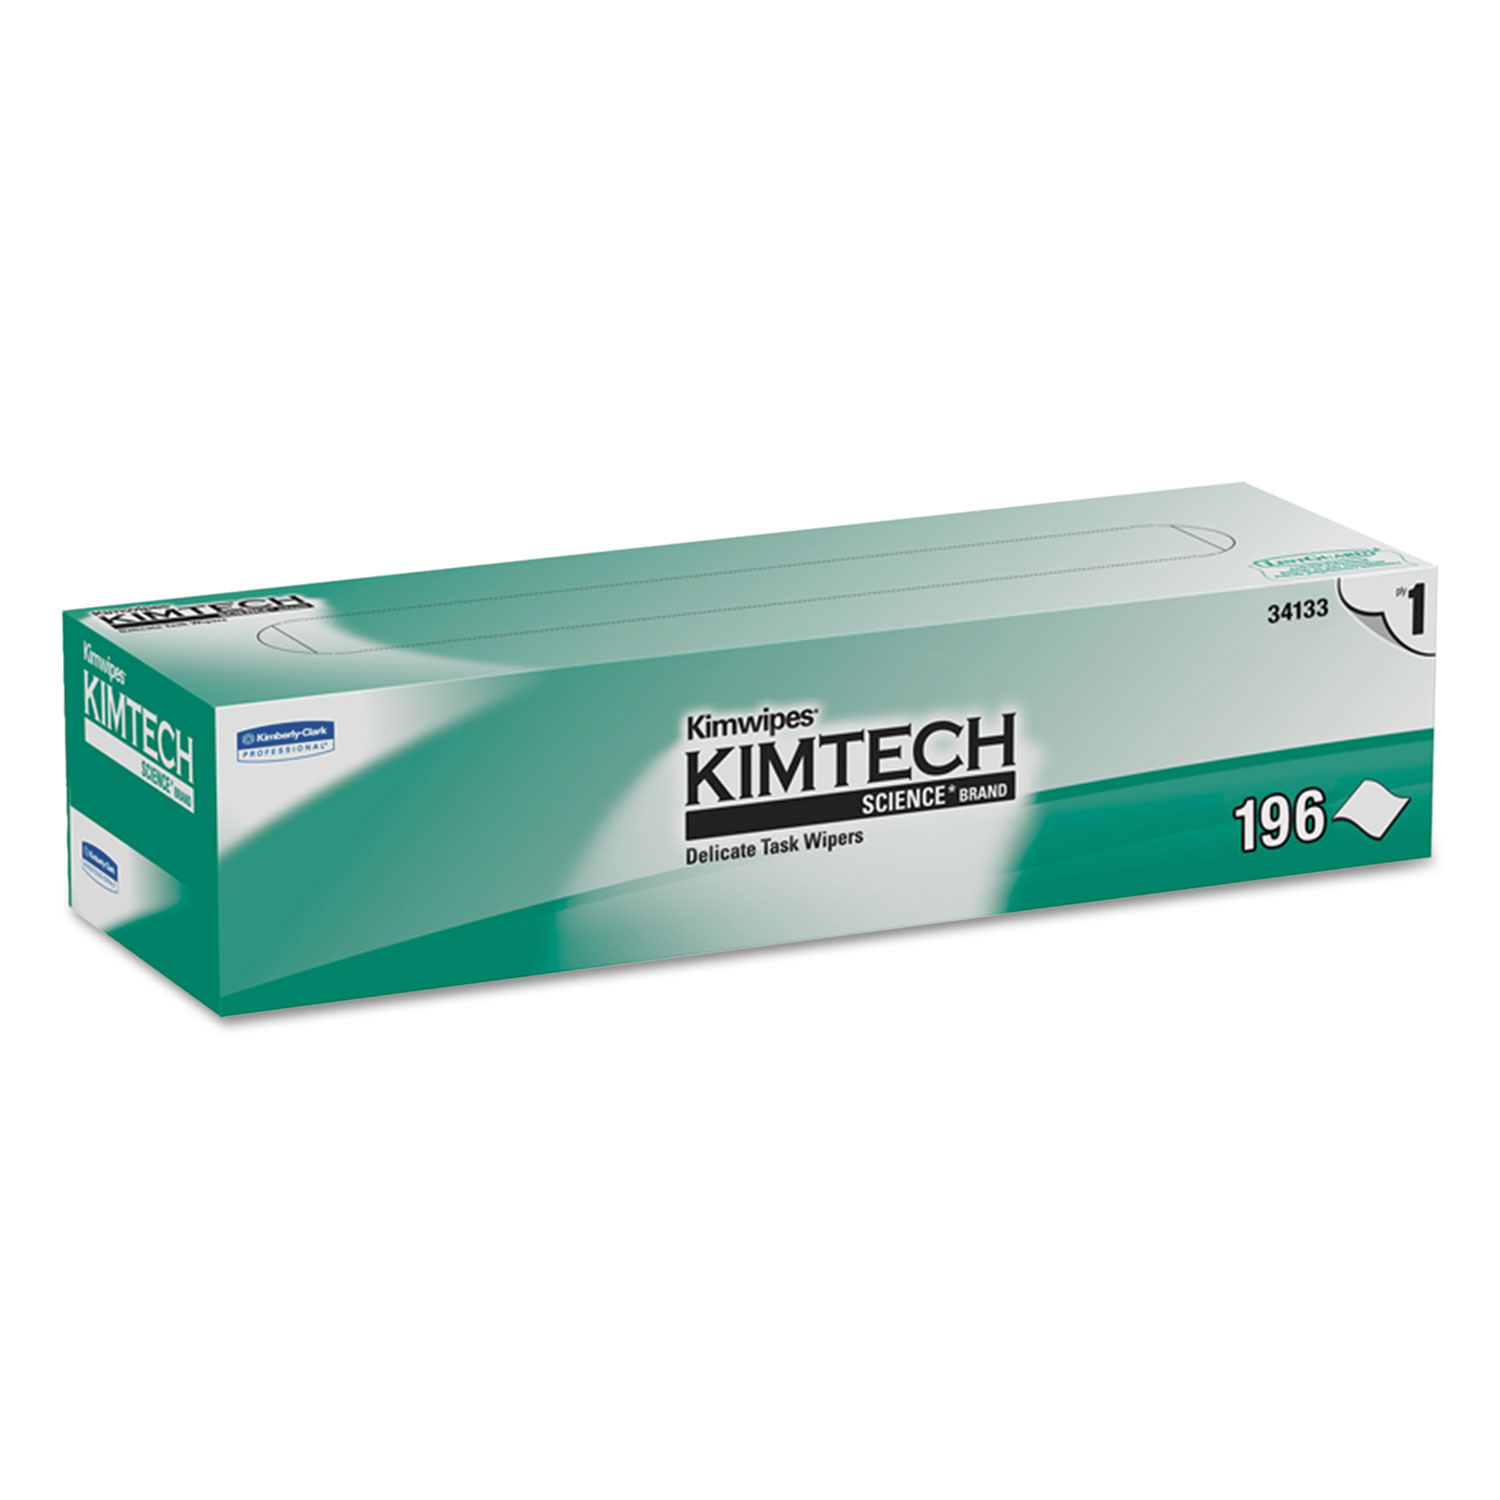  Kimtech KCC 34133 Kimwipes Delicate Task Wipers, 1-Ply, 11 4/5 x 11 4/5, 196/Box, 15 Boxes/Carton (KCC34133) 